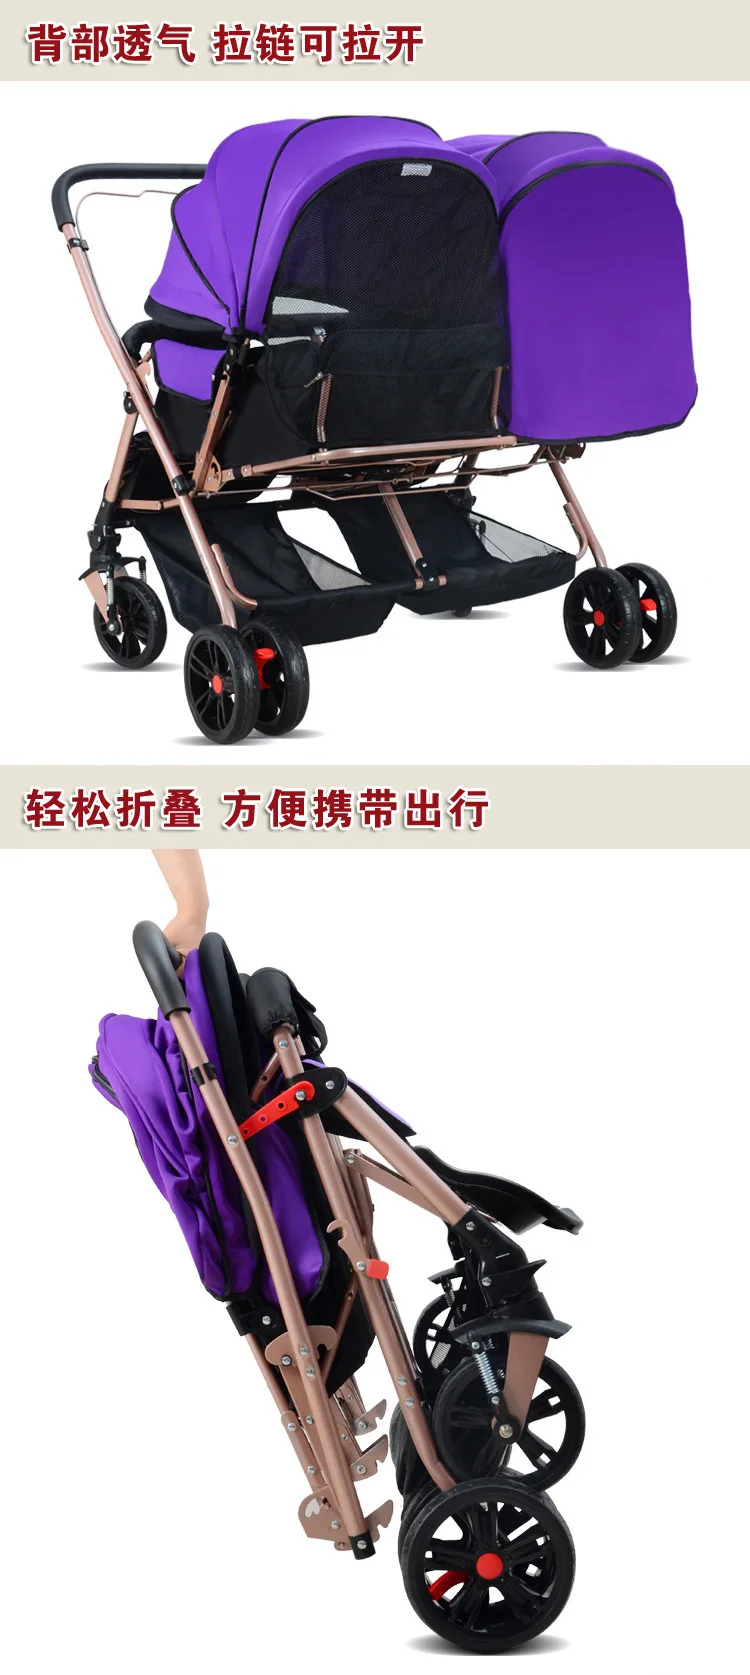 Новые парные Детские коляски, можно сидеть и лежать, детская коляска, четыре колеса highlland scape, легкие Двойные коляски для детей 0-3 лет